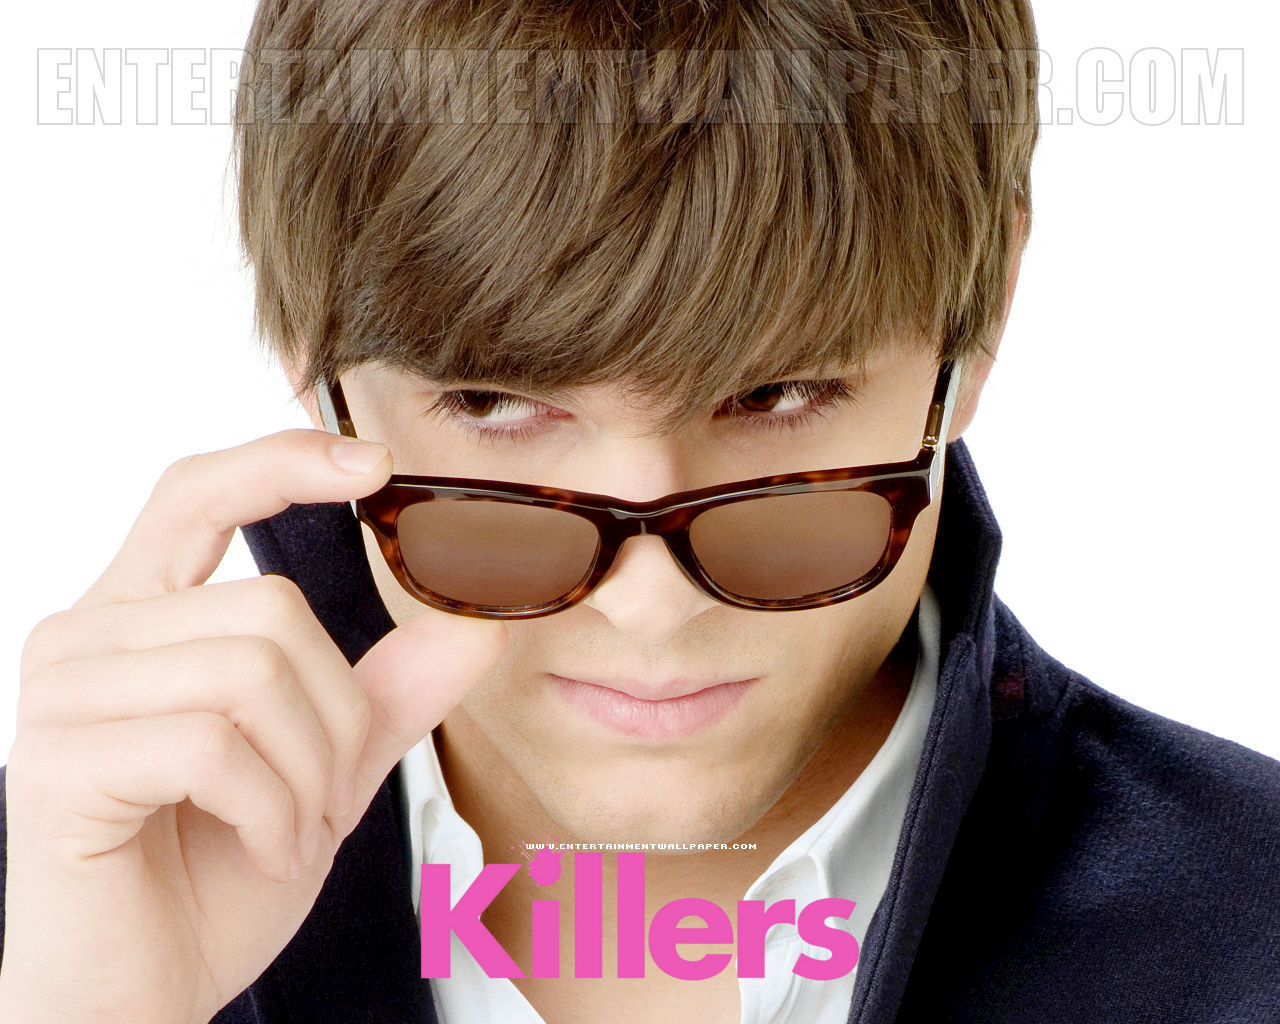 Killers 2010 Full Movie